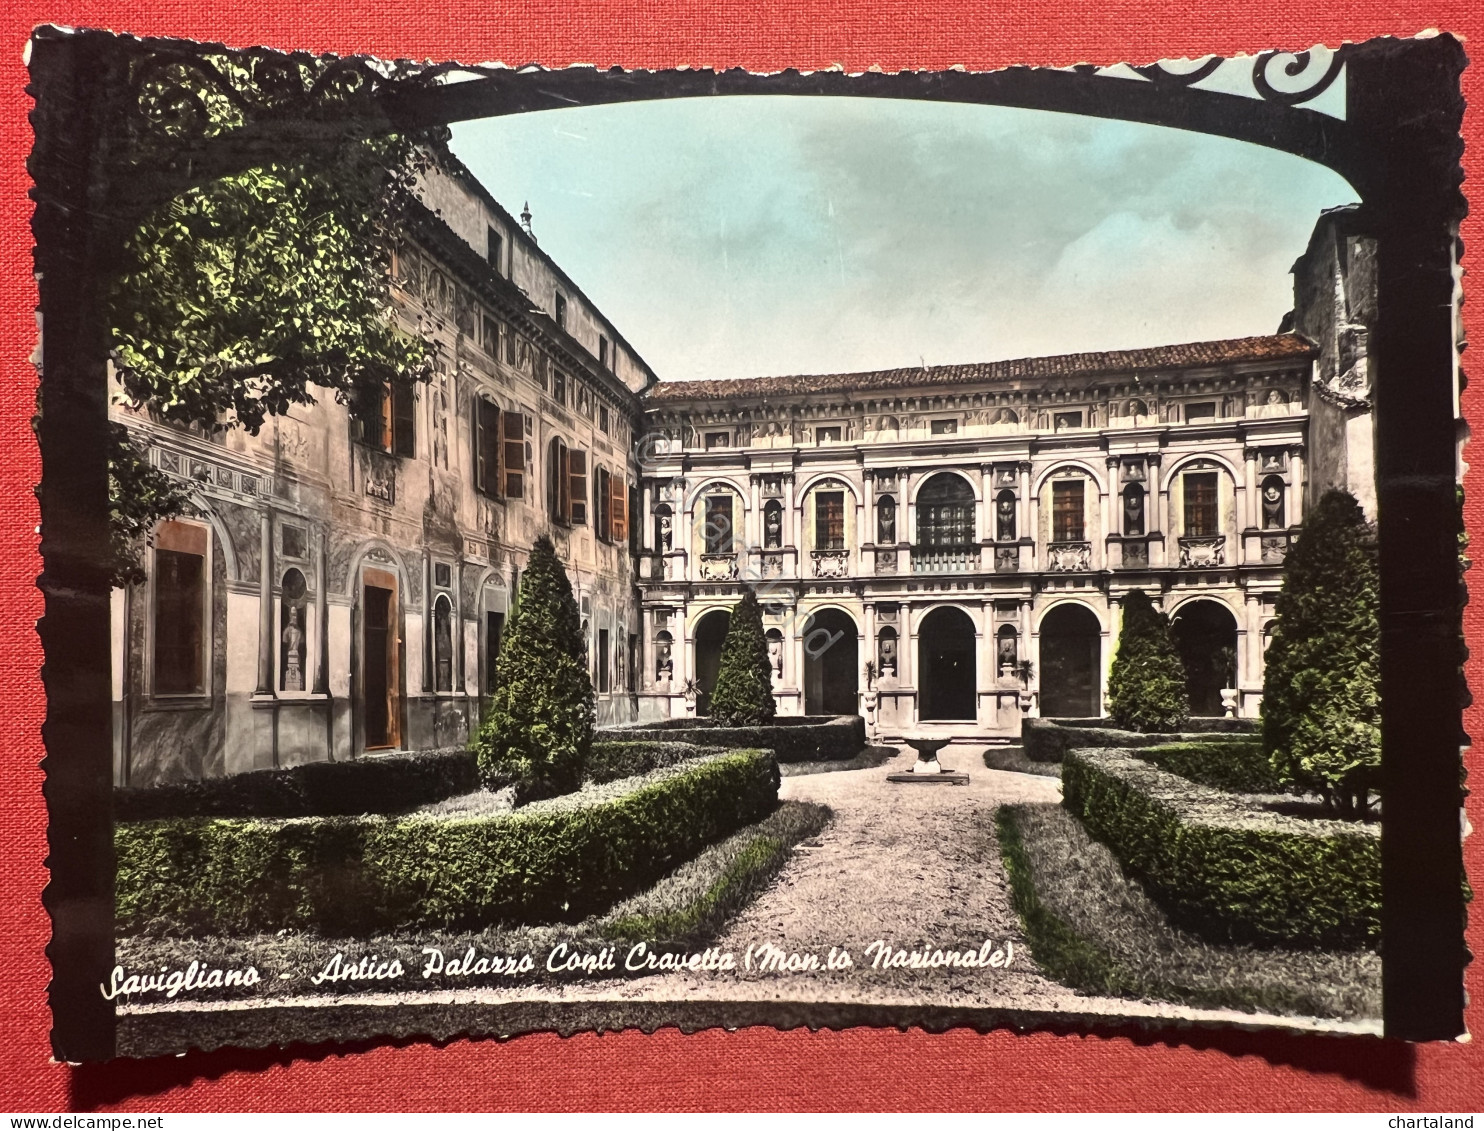 Cartolina - Savigliano - Antico Palazzo Conti Cravetta ( Mon. Nazionale ) - 1950 - Cuneo